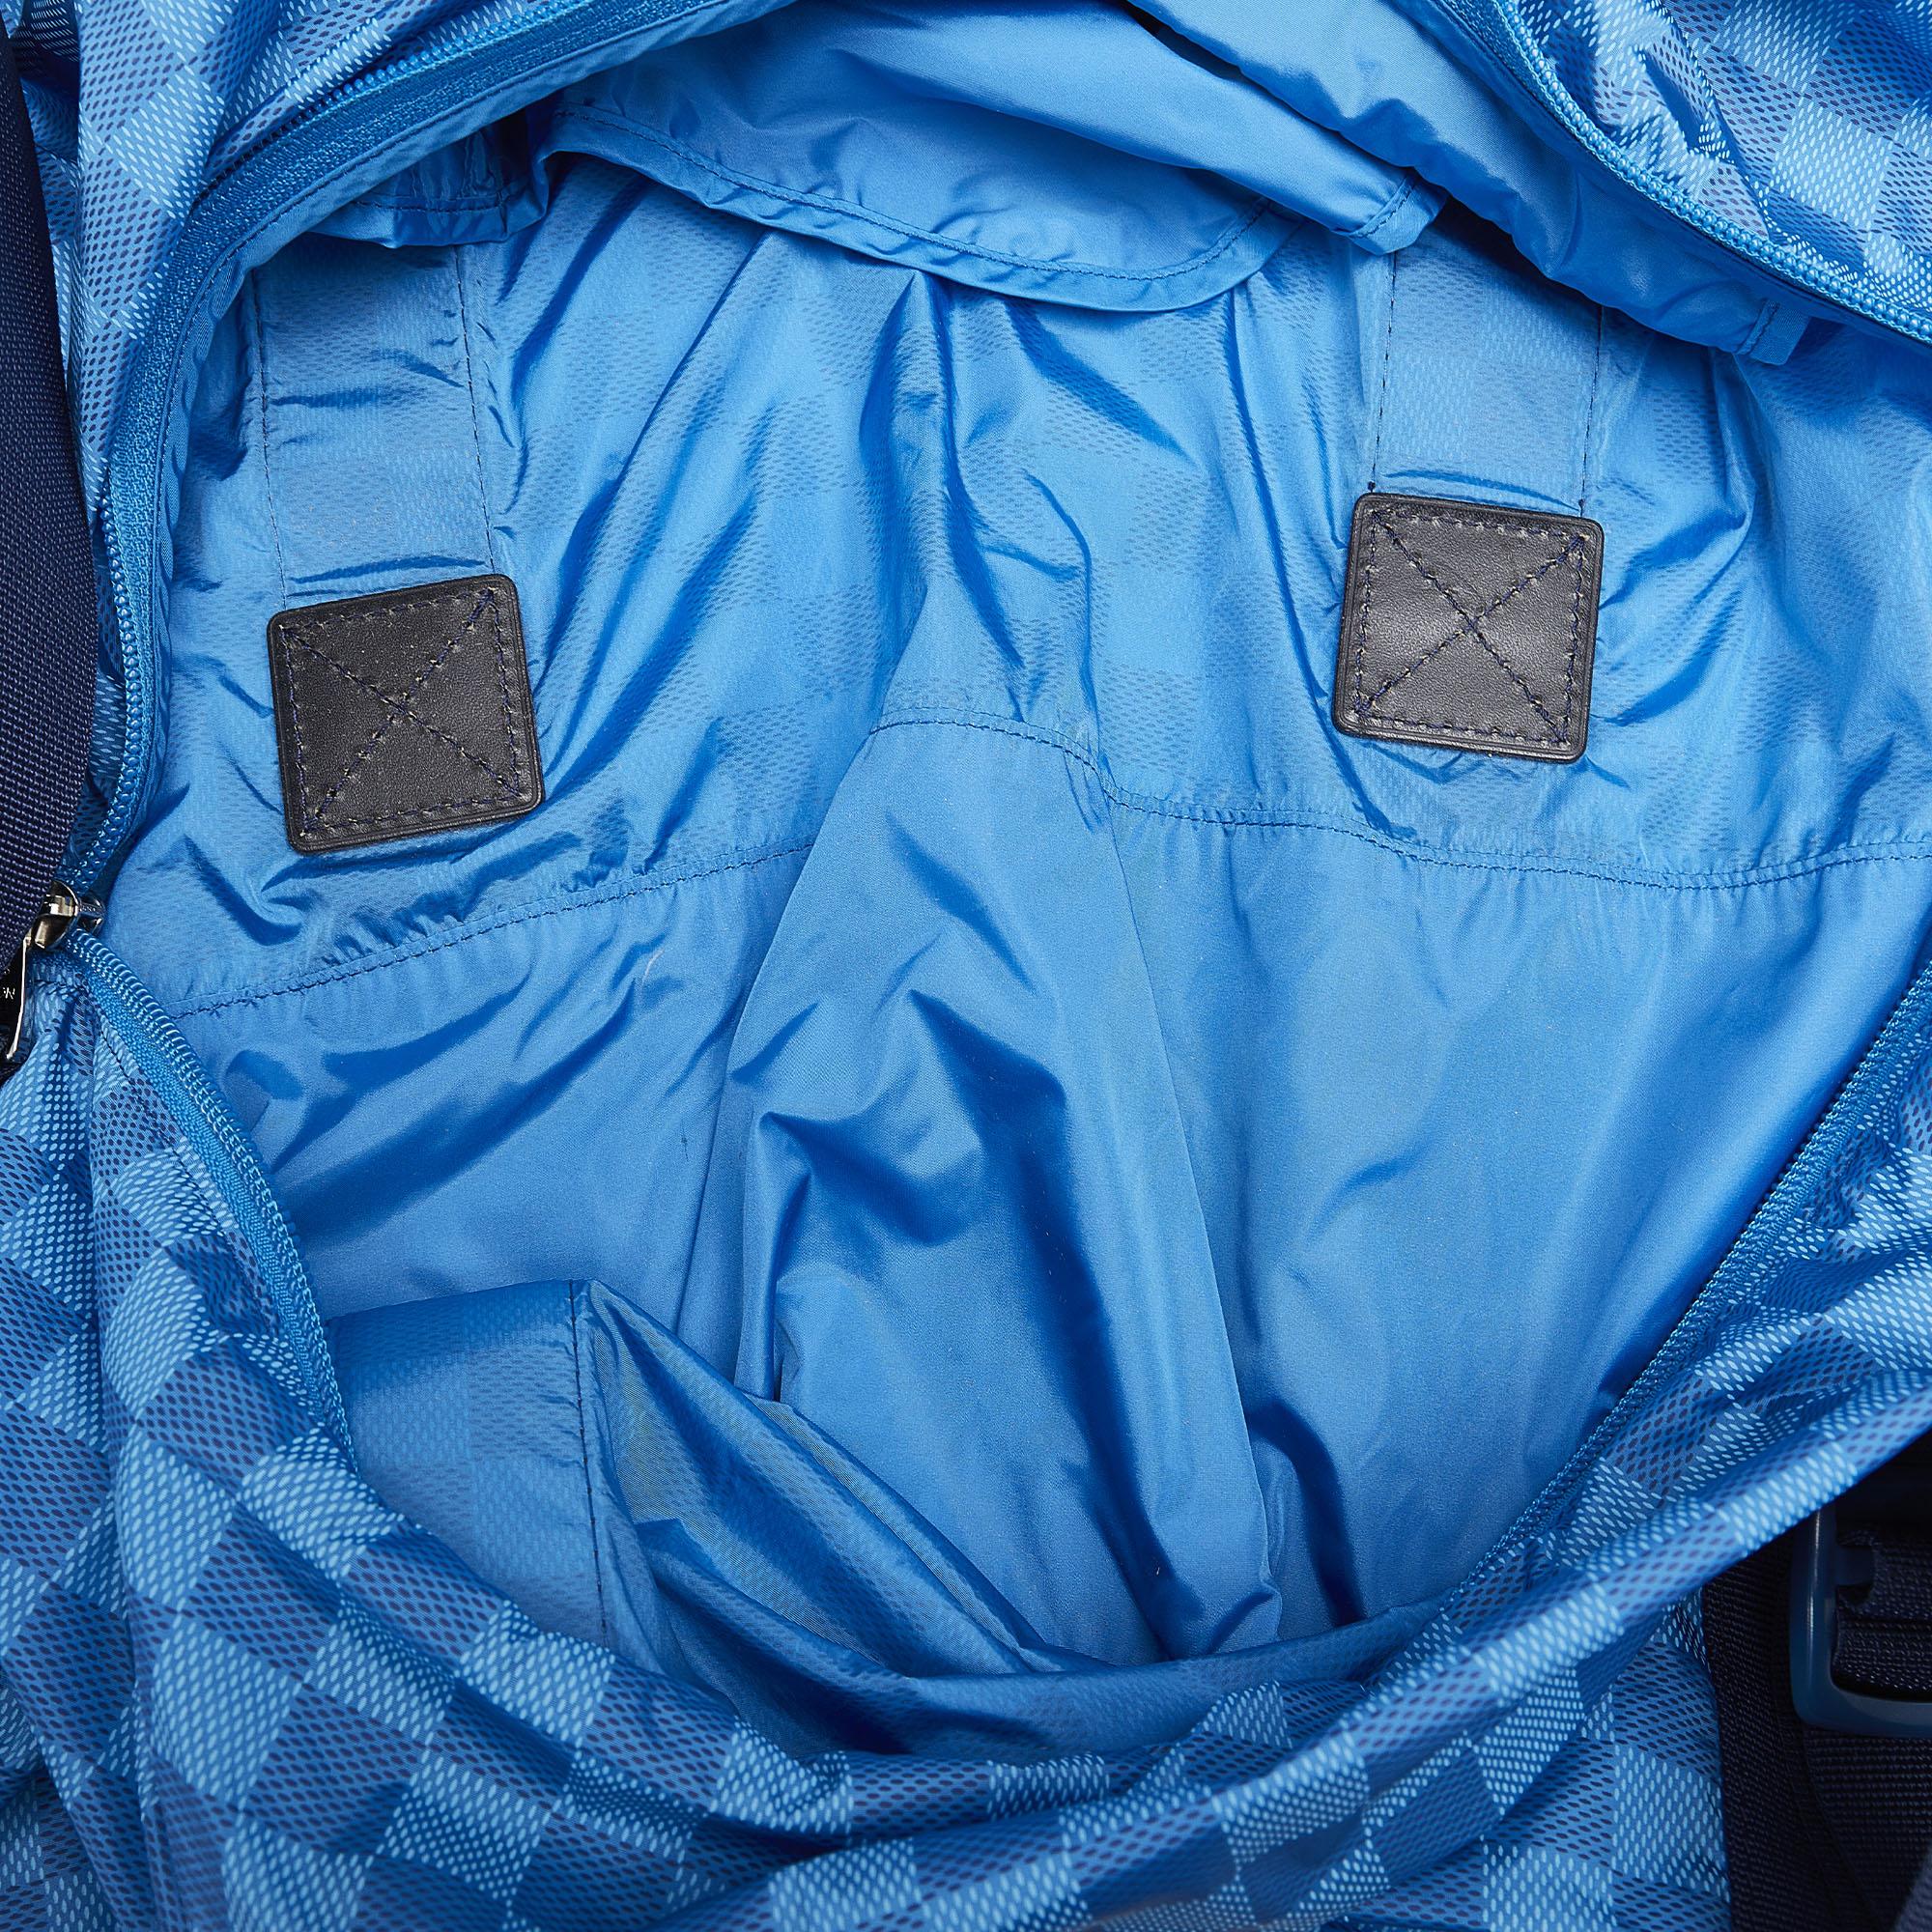 Louis Vuitton Blue Damier Aventure Practical Bag